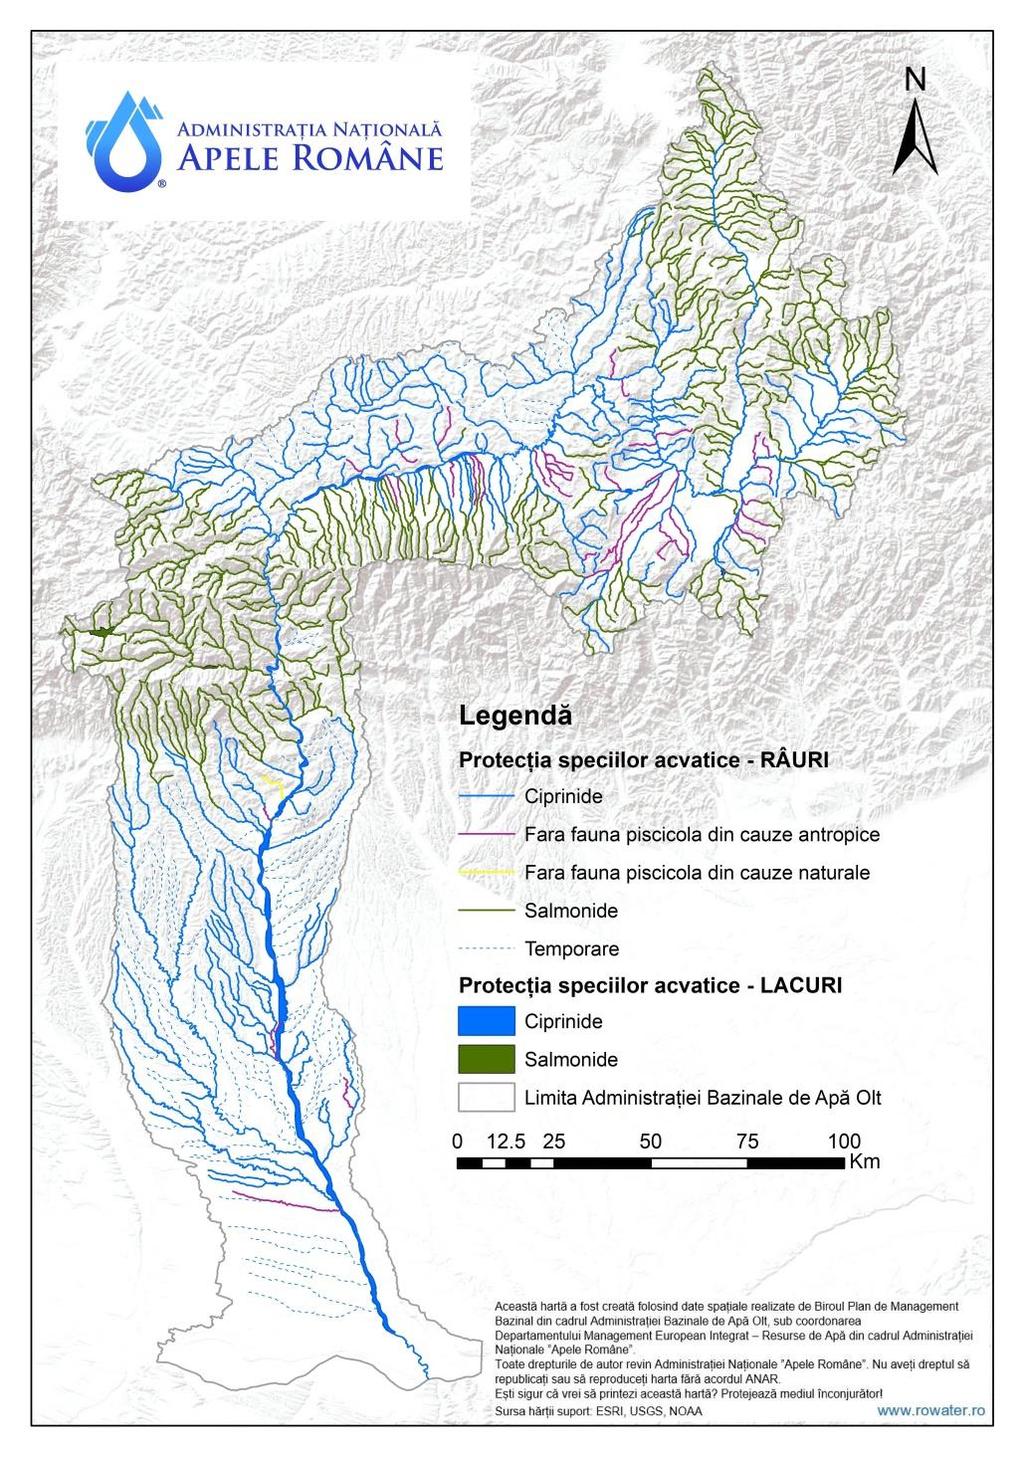 importante din punct de vedere economic - cursurile de apă aparţinând zonei salmonicole localizate în zona montană unde sunt prezente speciile: păstrăvul comun (Salmo trutta